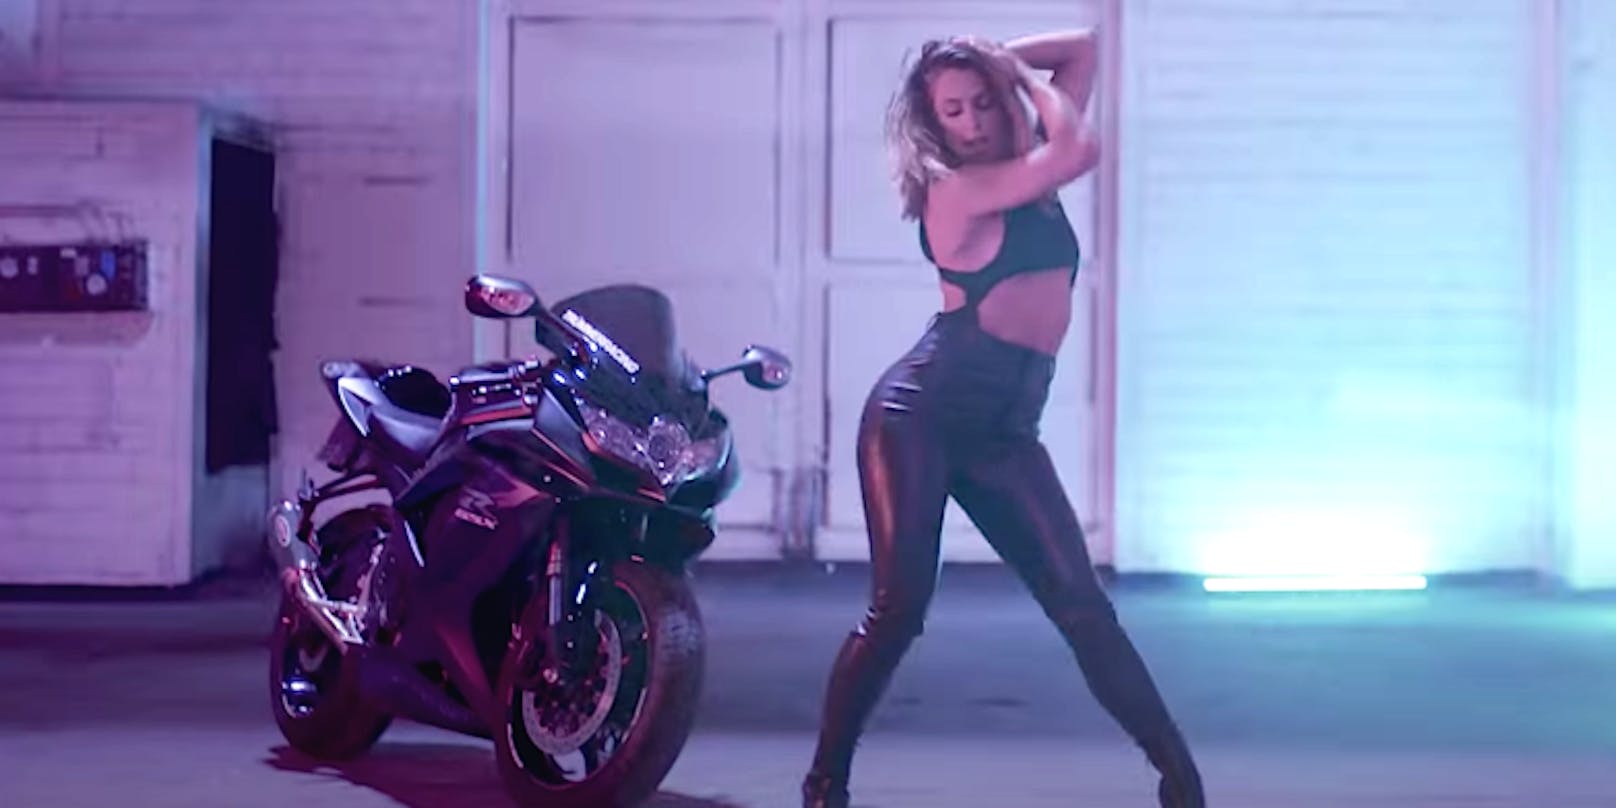 Um "Mitternacht" wird Schlagerprinzessin <strong>Vanessa Mai</strong> zur sexy Biker-Braut. Ihr neues Musikvideo begeistert seit dieser Nacht ihre zahlreichen Fans.